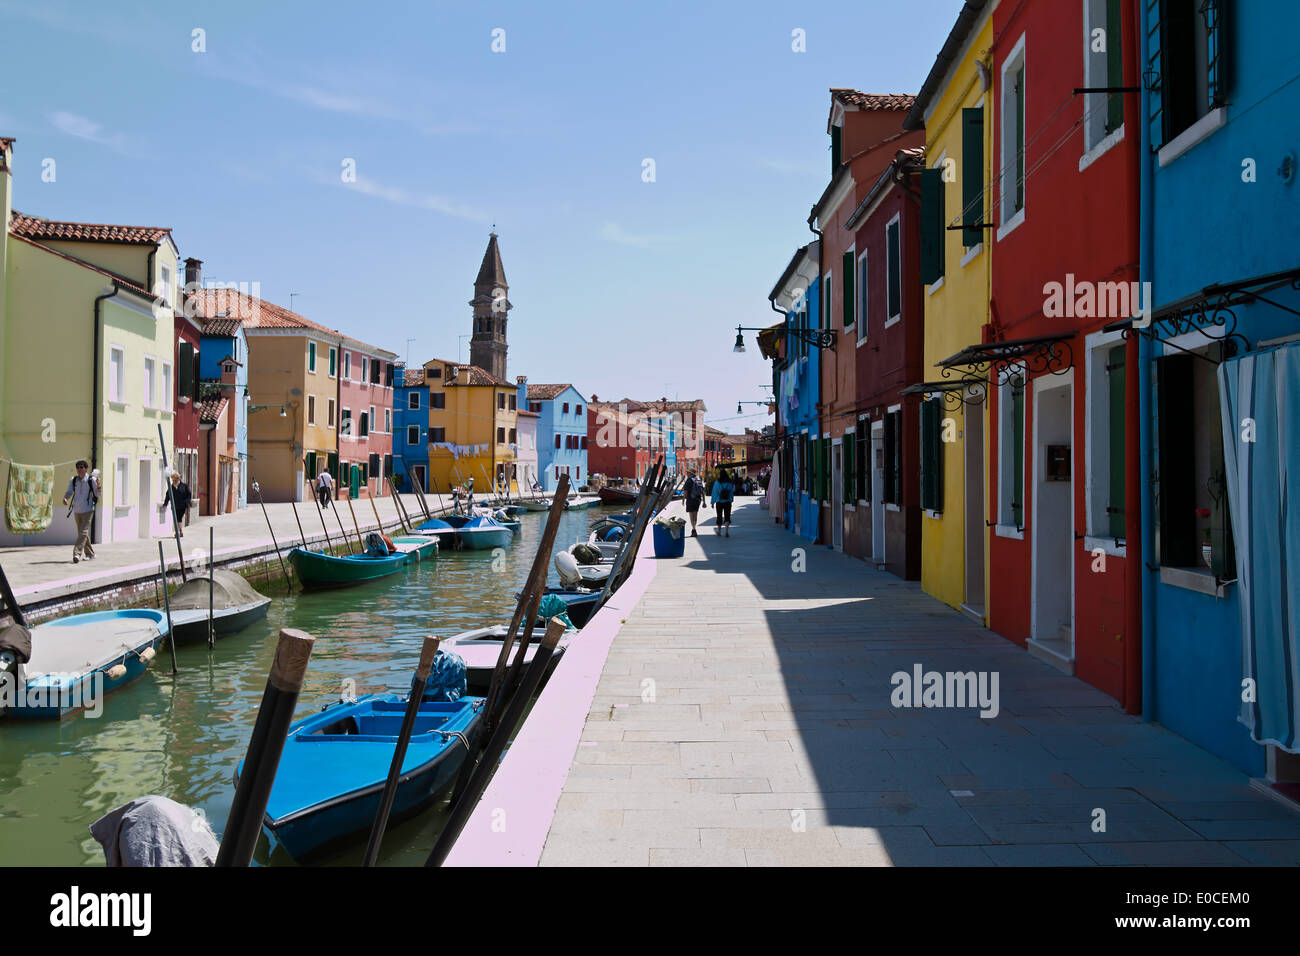 Die sehenswerte Stadt Venedig in Italien. Insel Burano, Die Sehenswerte Stadt Venedig in Italien. Insel Burano Stockfoto